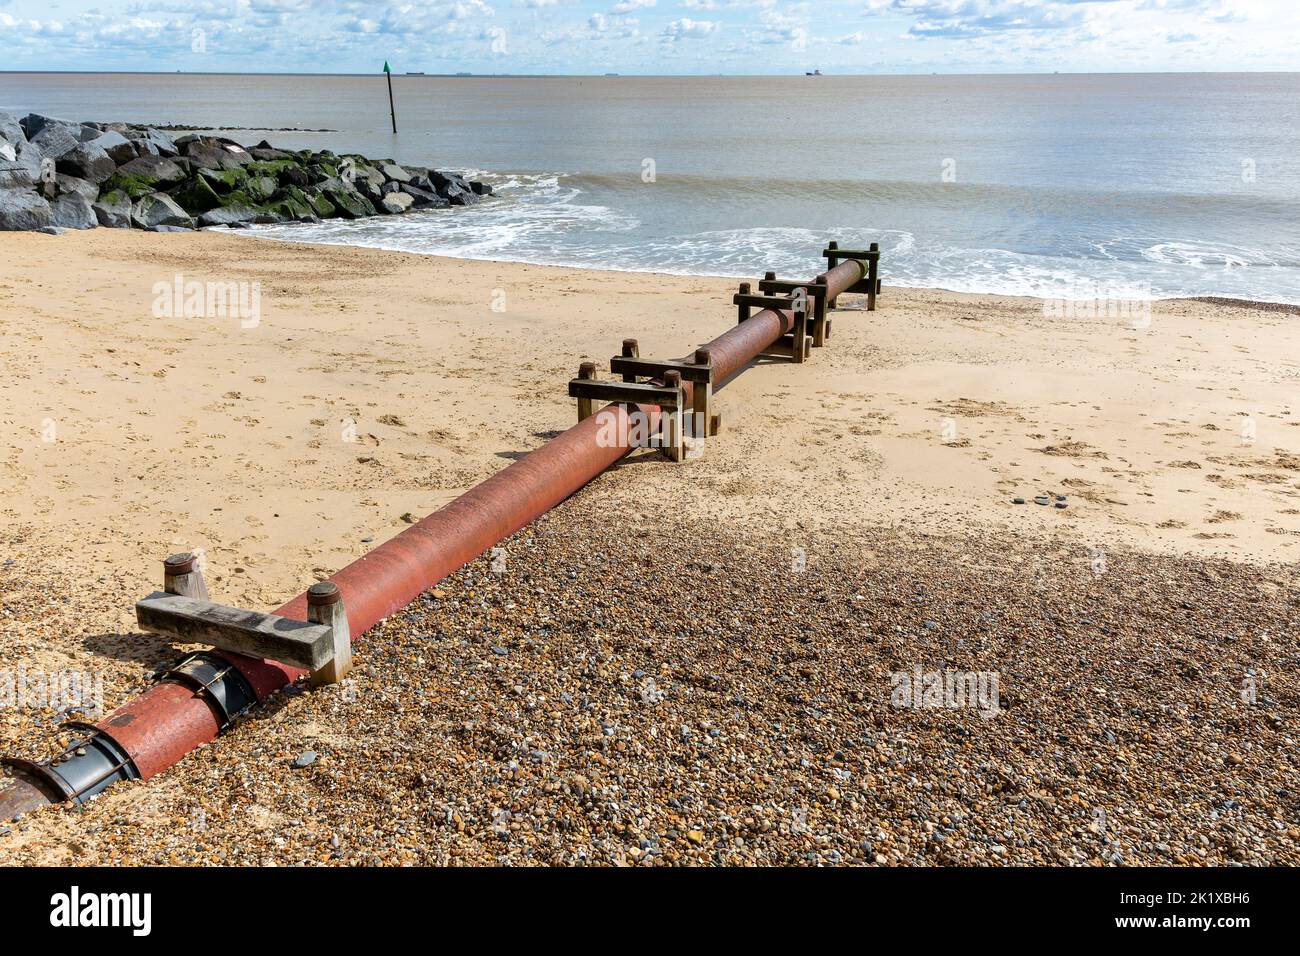 Tuyau d'écoulement d'eau Anglian sur une plage de sable, Felixstowe, Suffolk, Angleterre, Royaume-Uni Banque D'Images